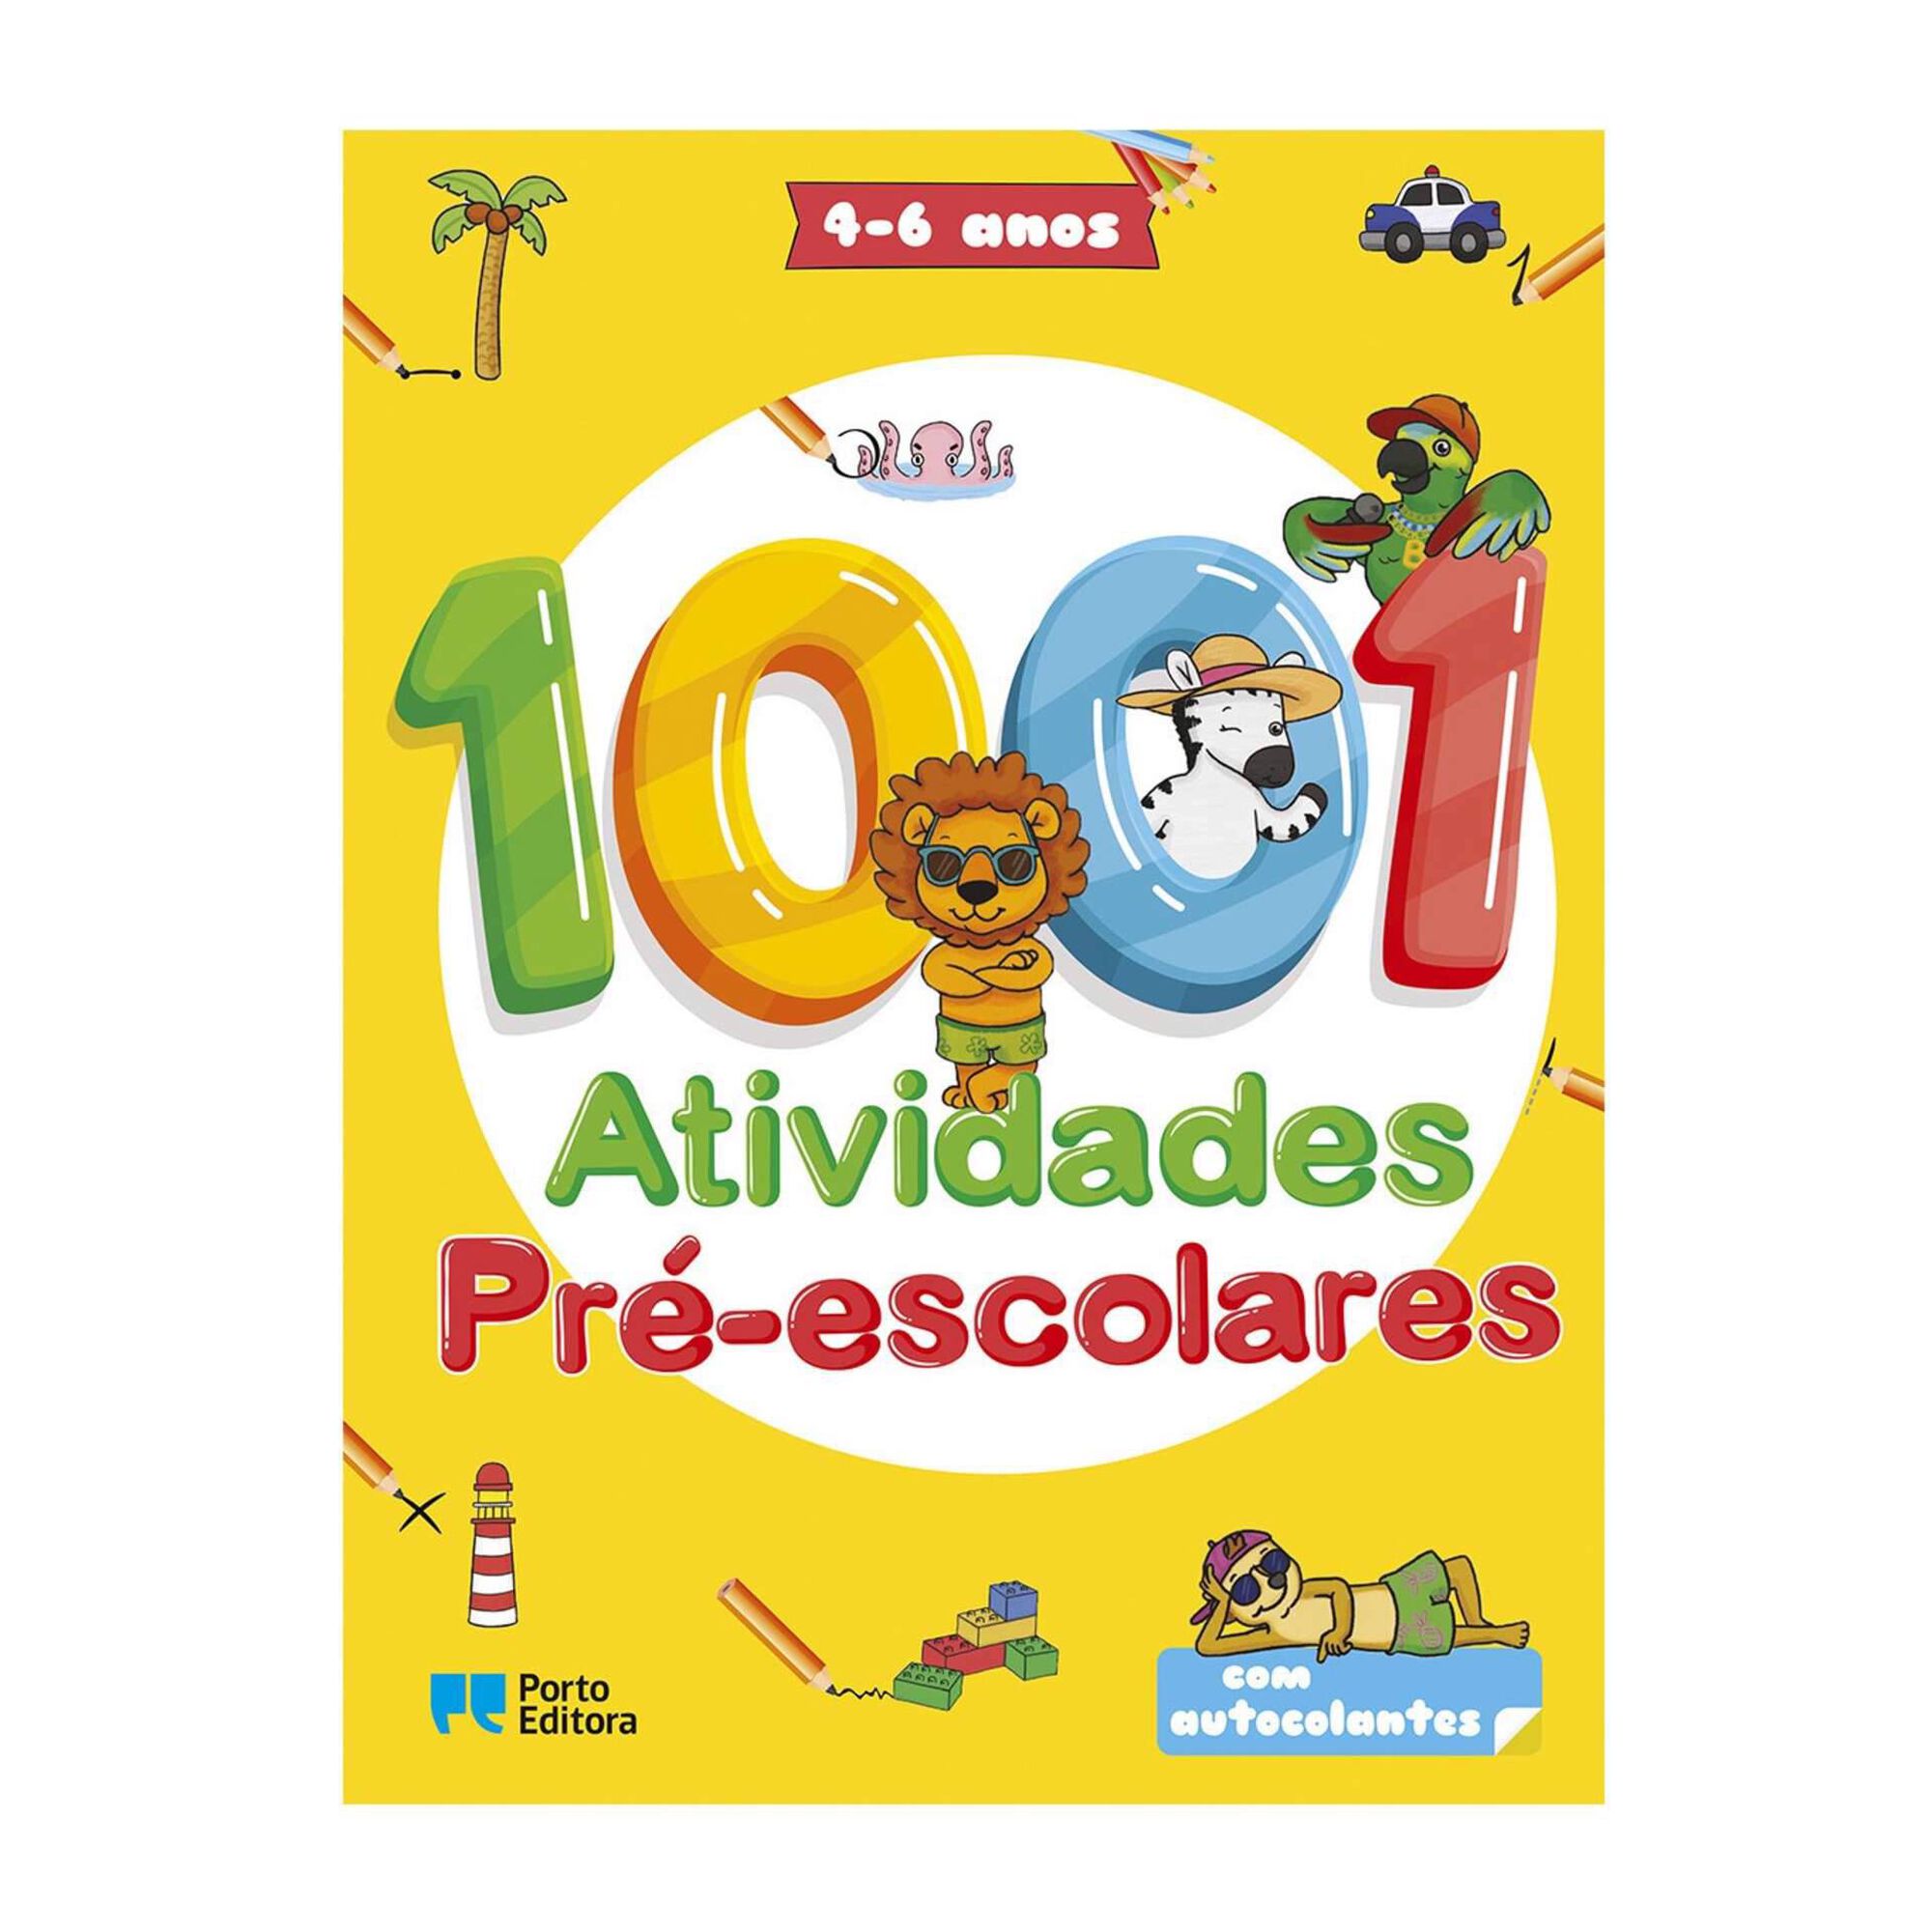 1001 Atividades Pré-escolares